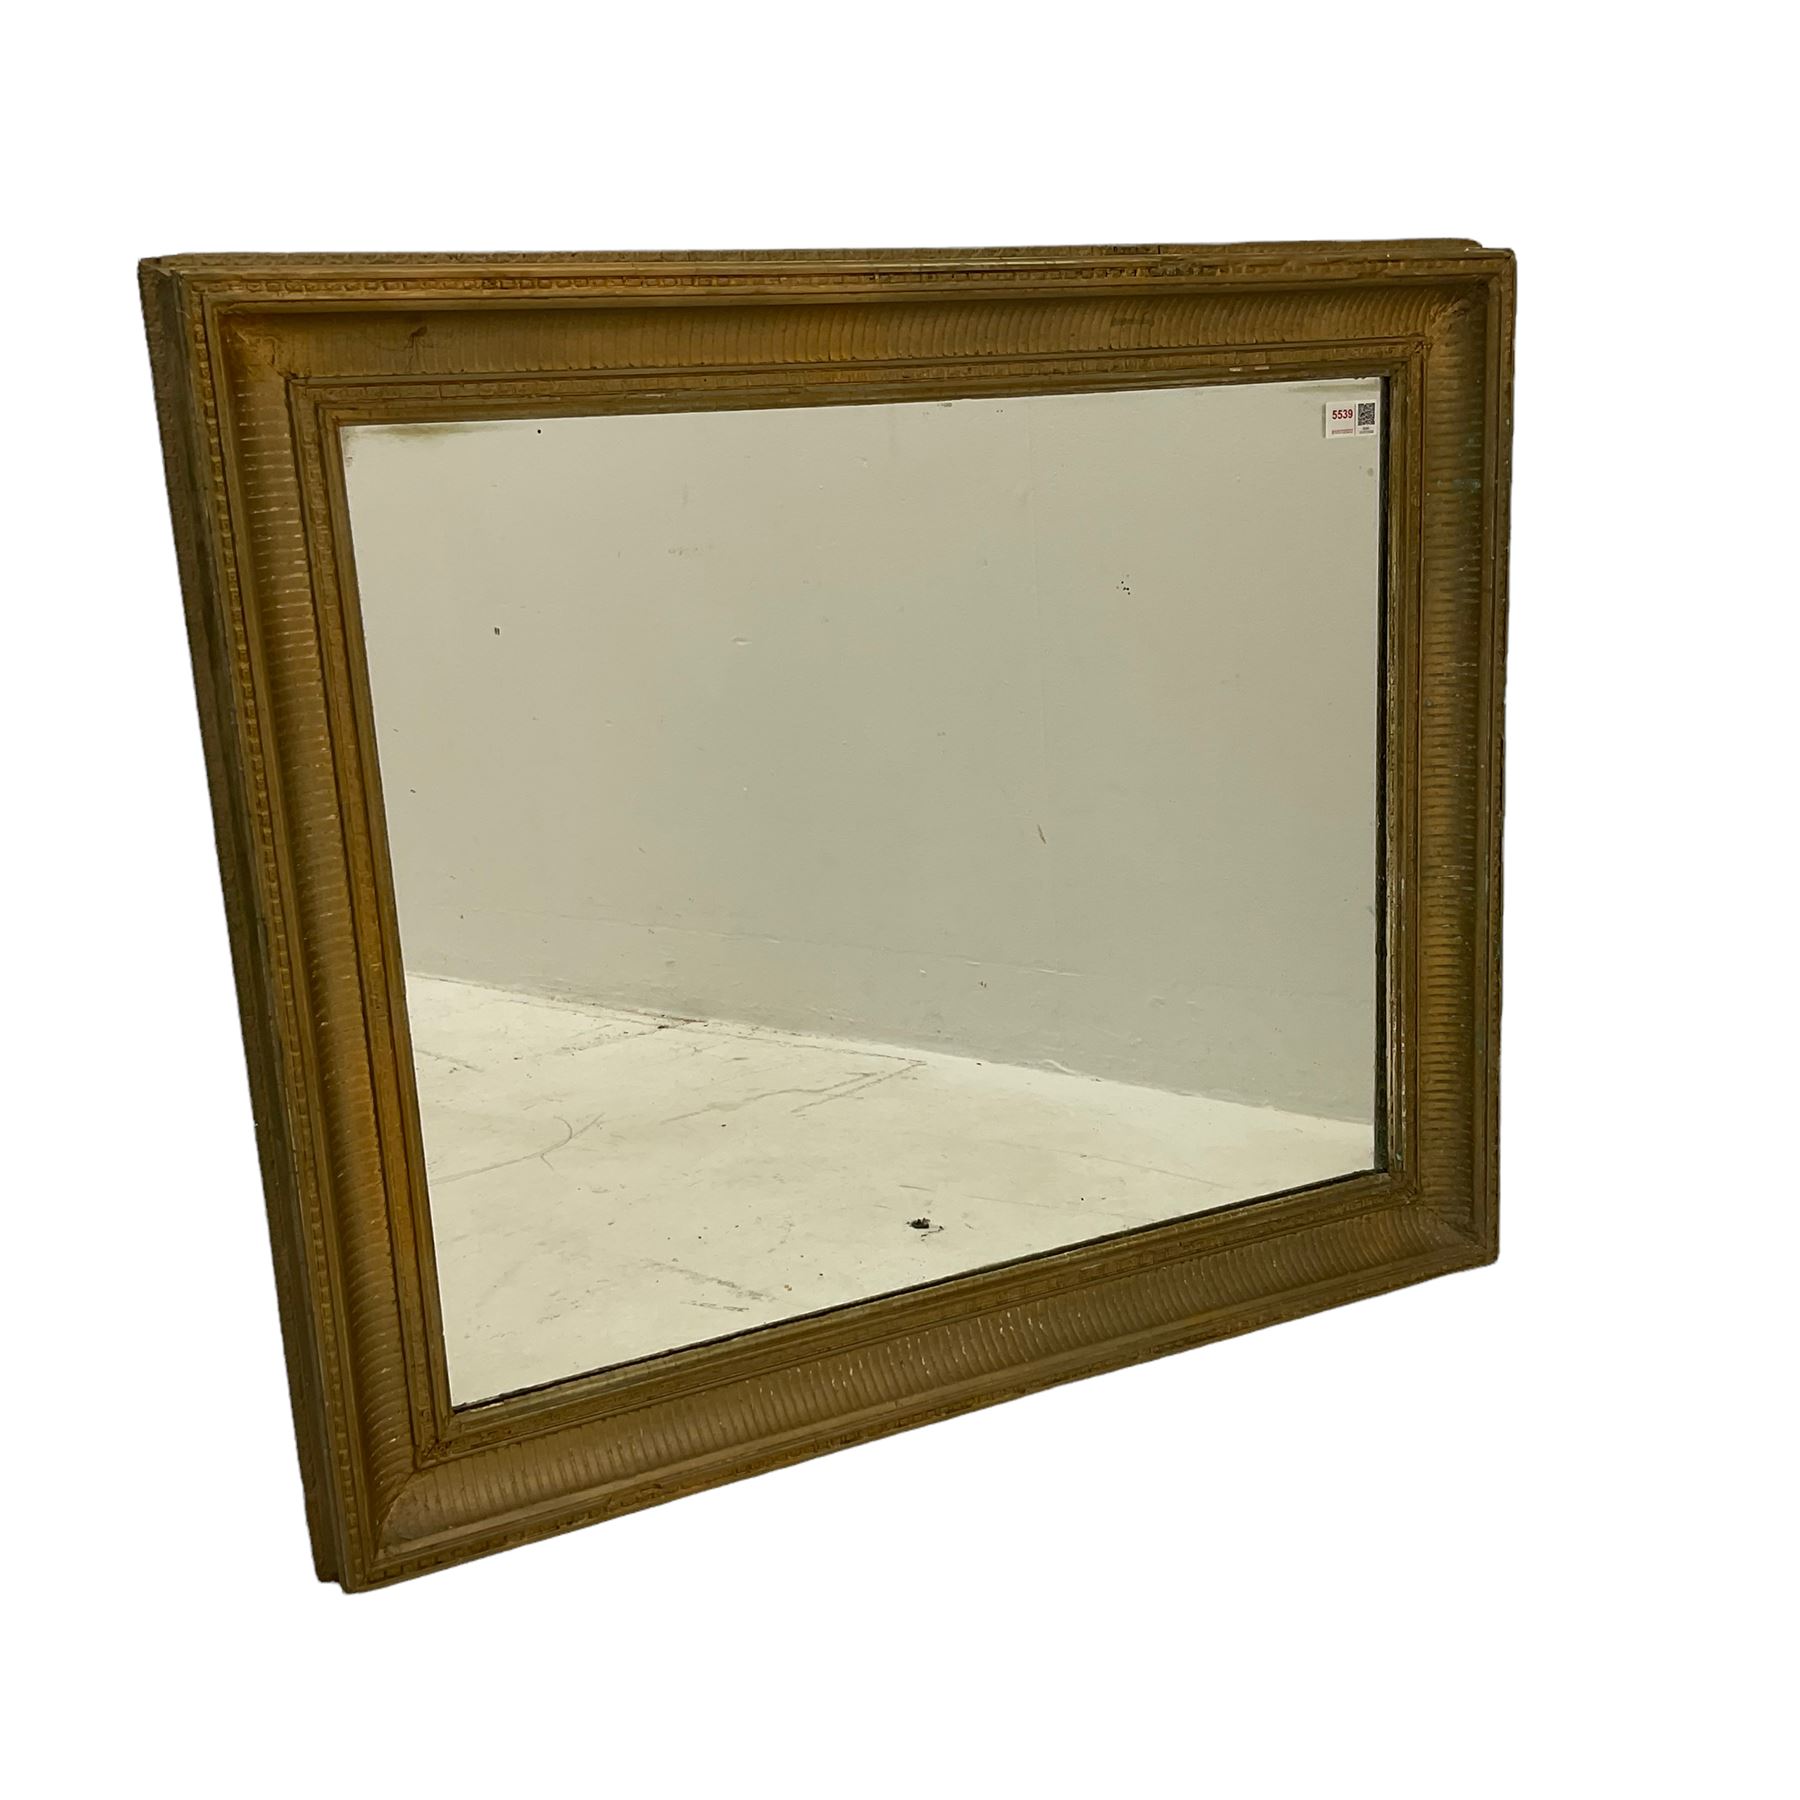 Rectangular mirror in gilt frame (78cm x 104cm) - Image 2 of 3